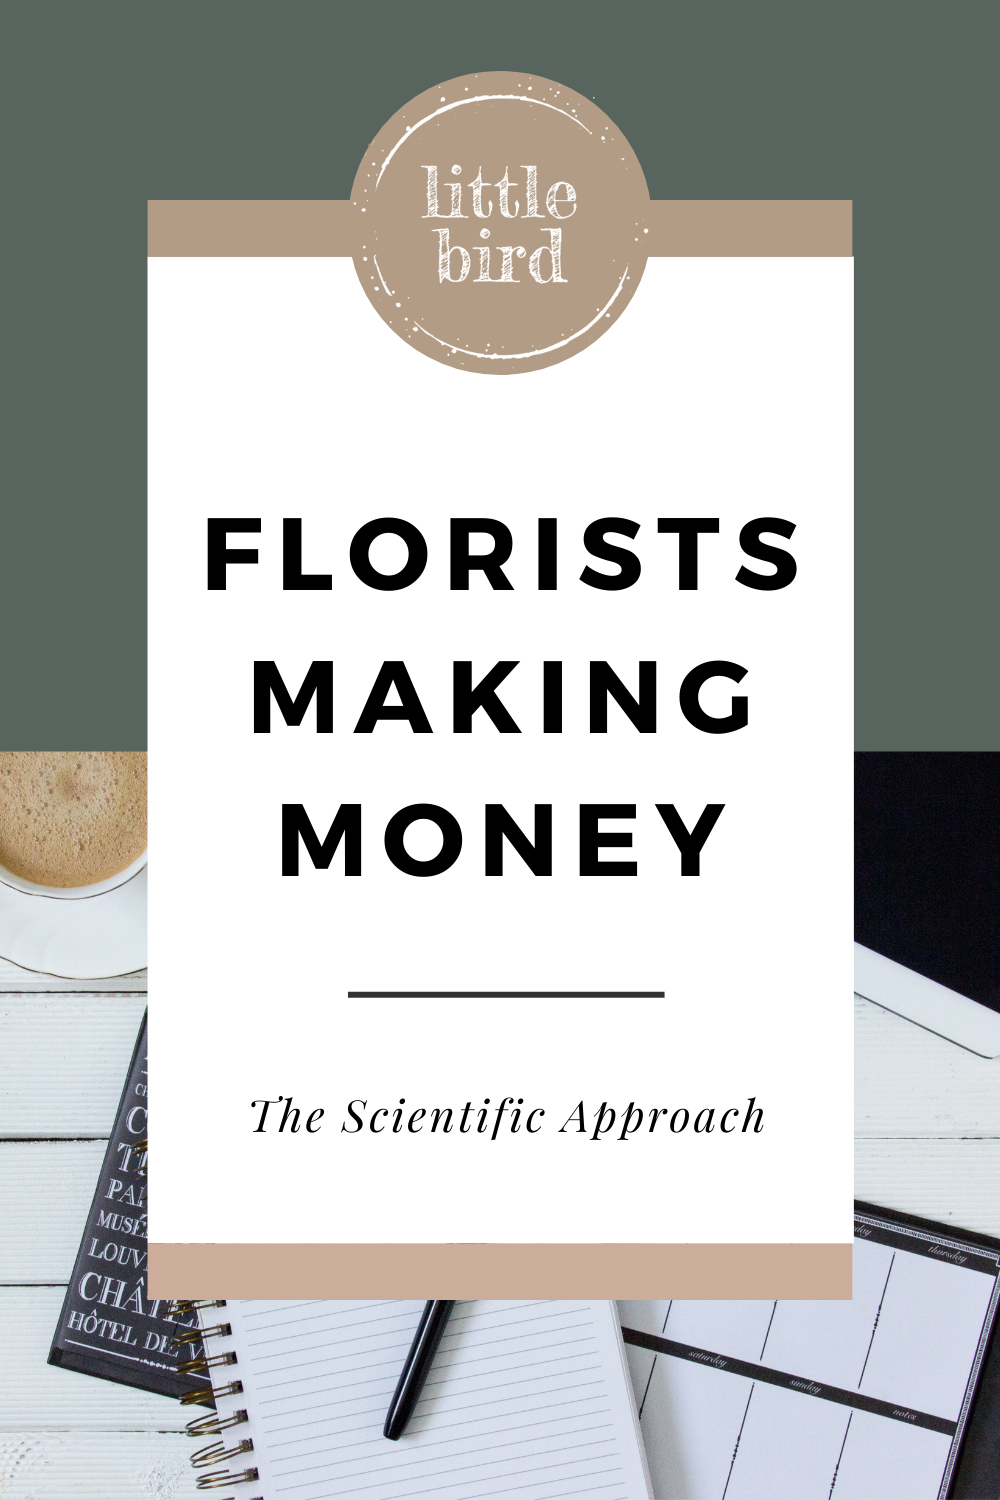 April 13 – Florists Make Money The Scientific Approach